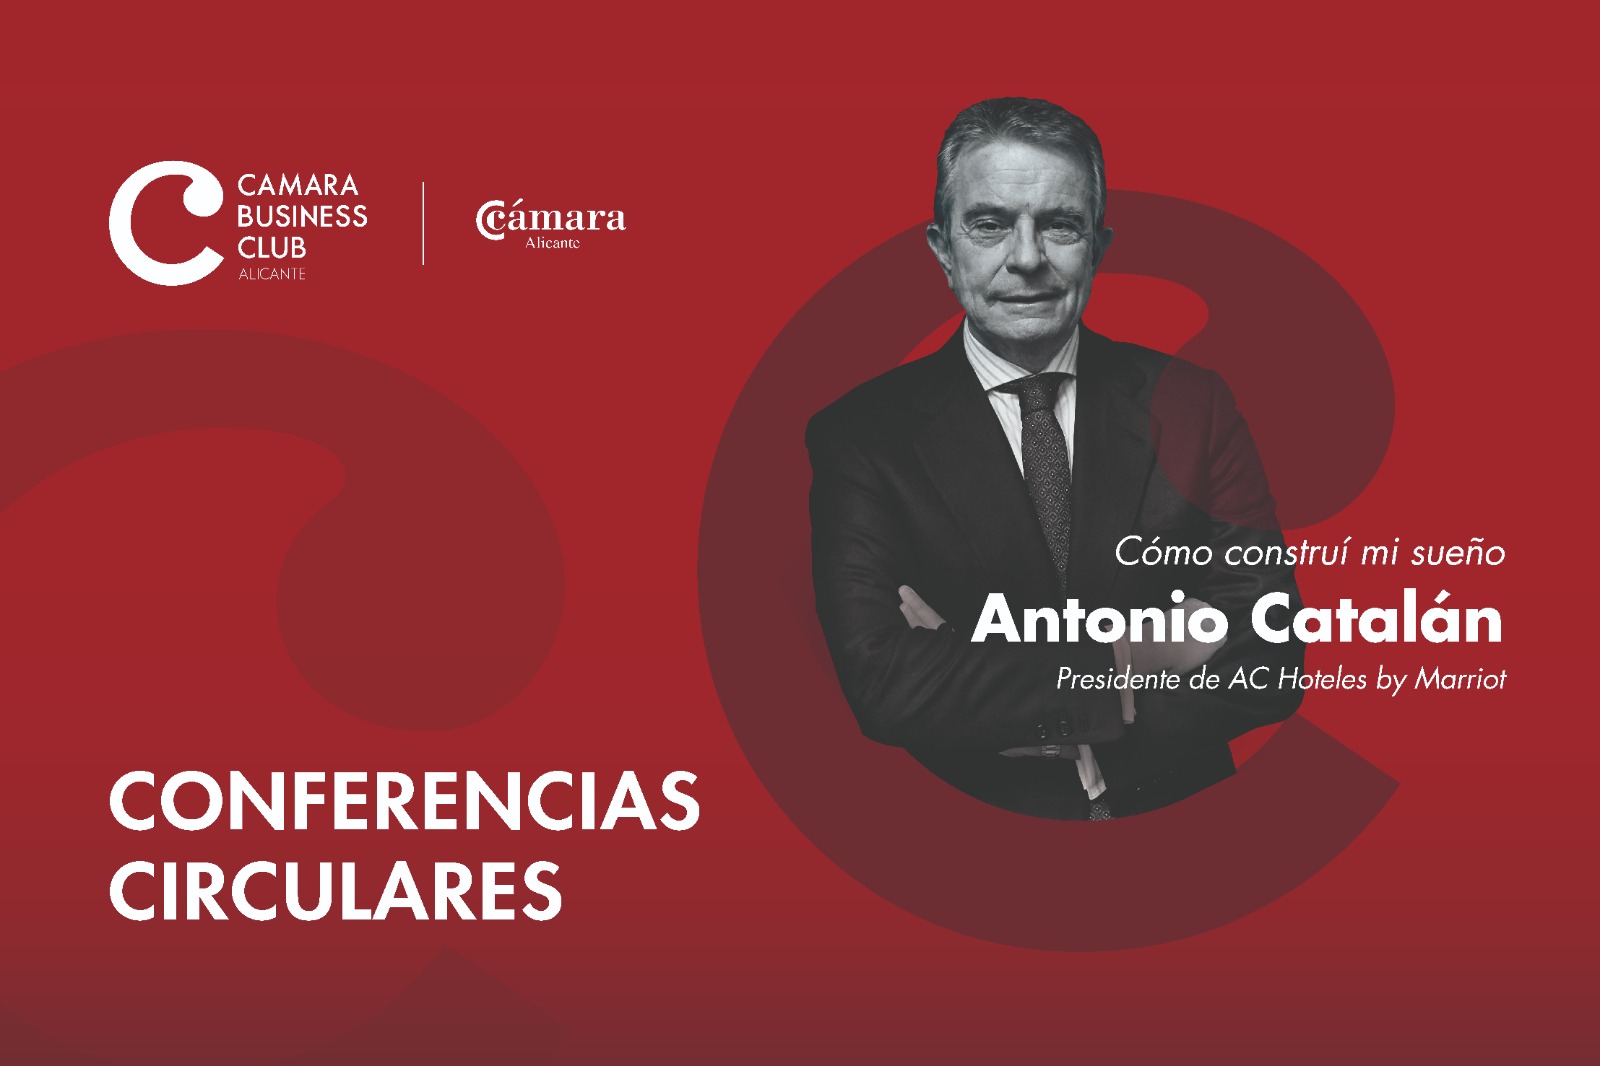 Conferencias Circulares: Cómo construí mi sueño con Antonio Catalán